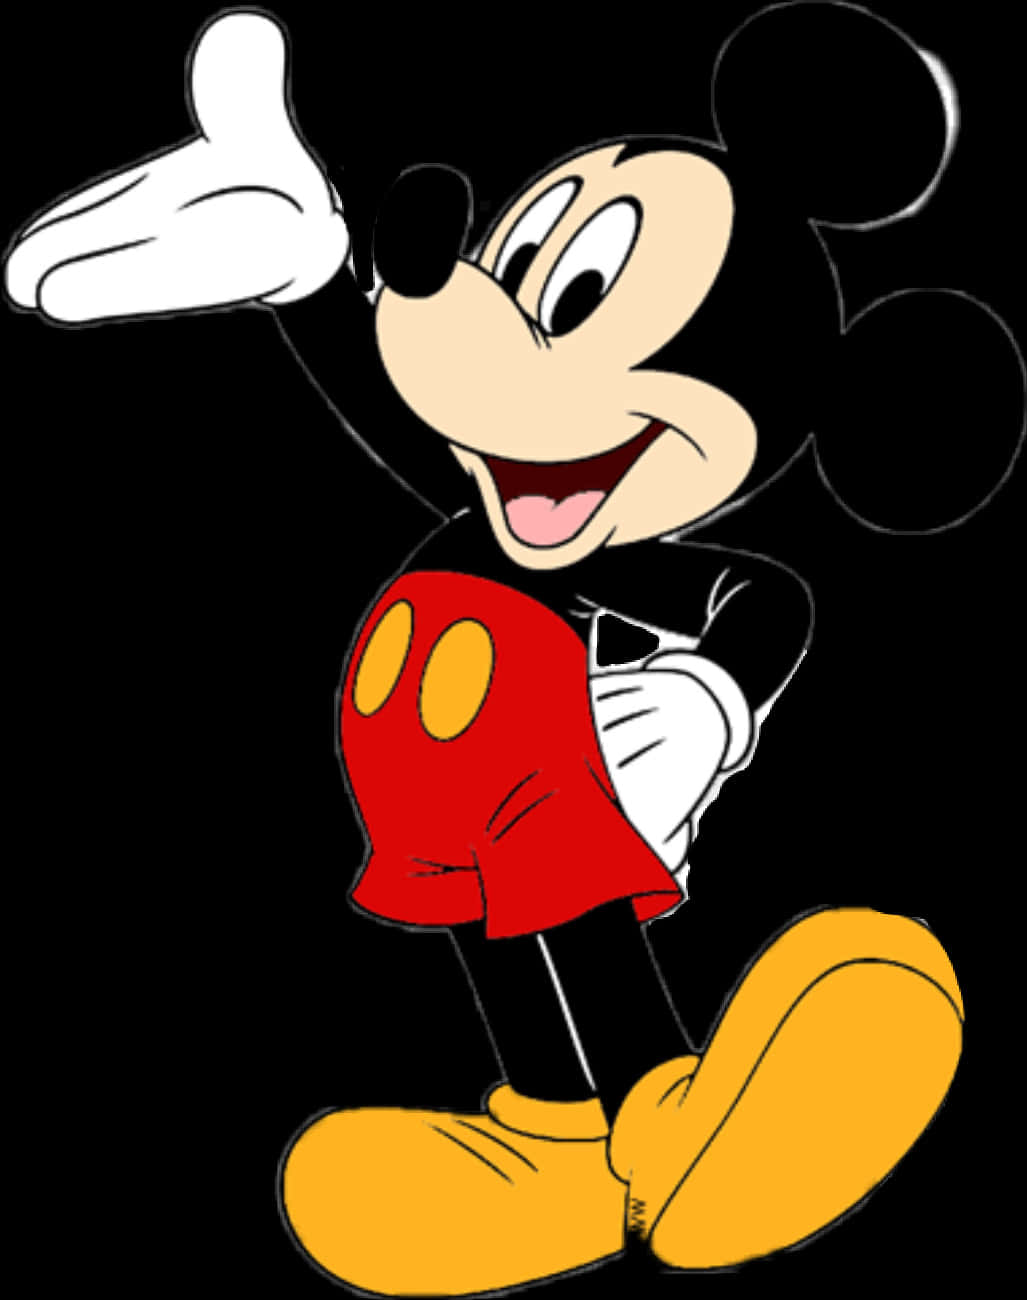 Comece2021 Com Os Desejos De Ano Novo Do Mickey Mouse Como Papel De Parede Do Seu Computador Ou Celular. Papel de Parede